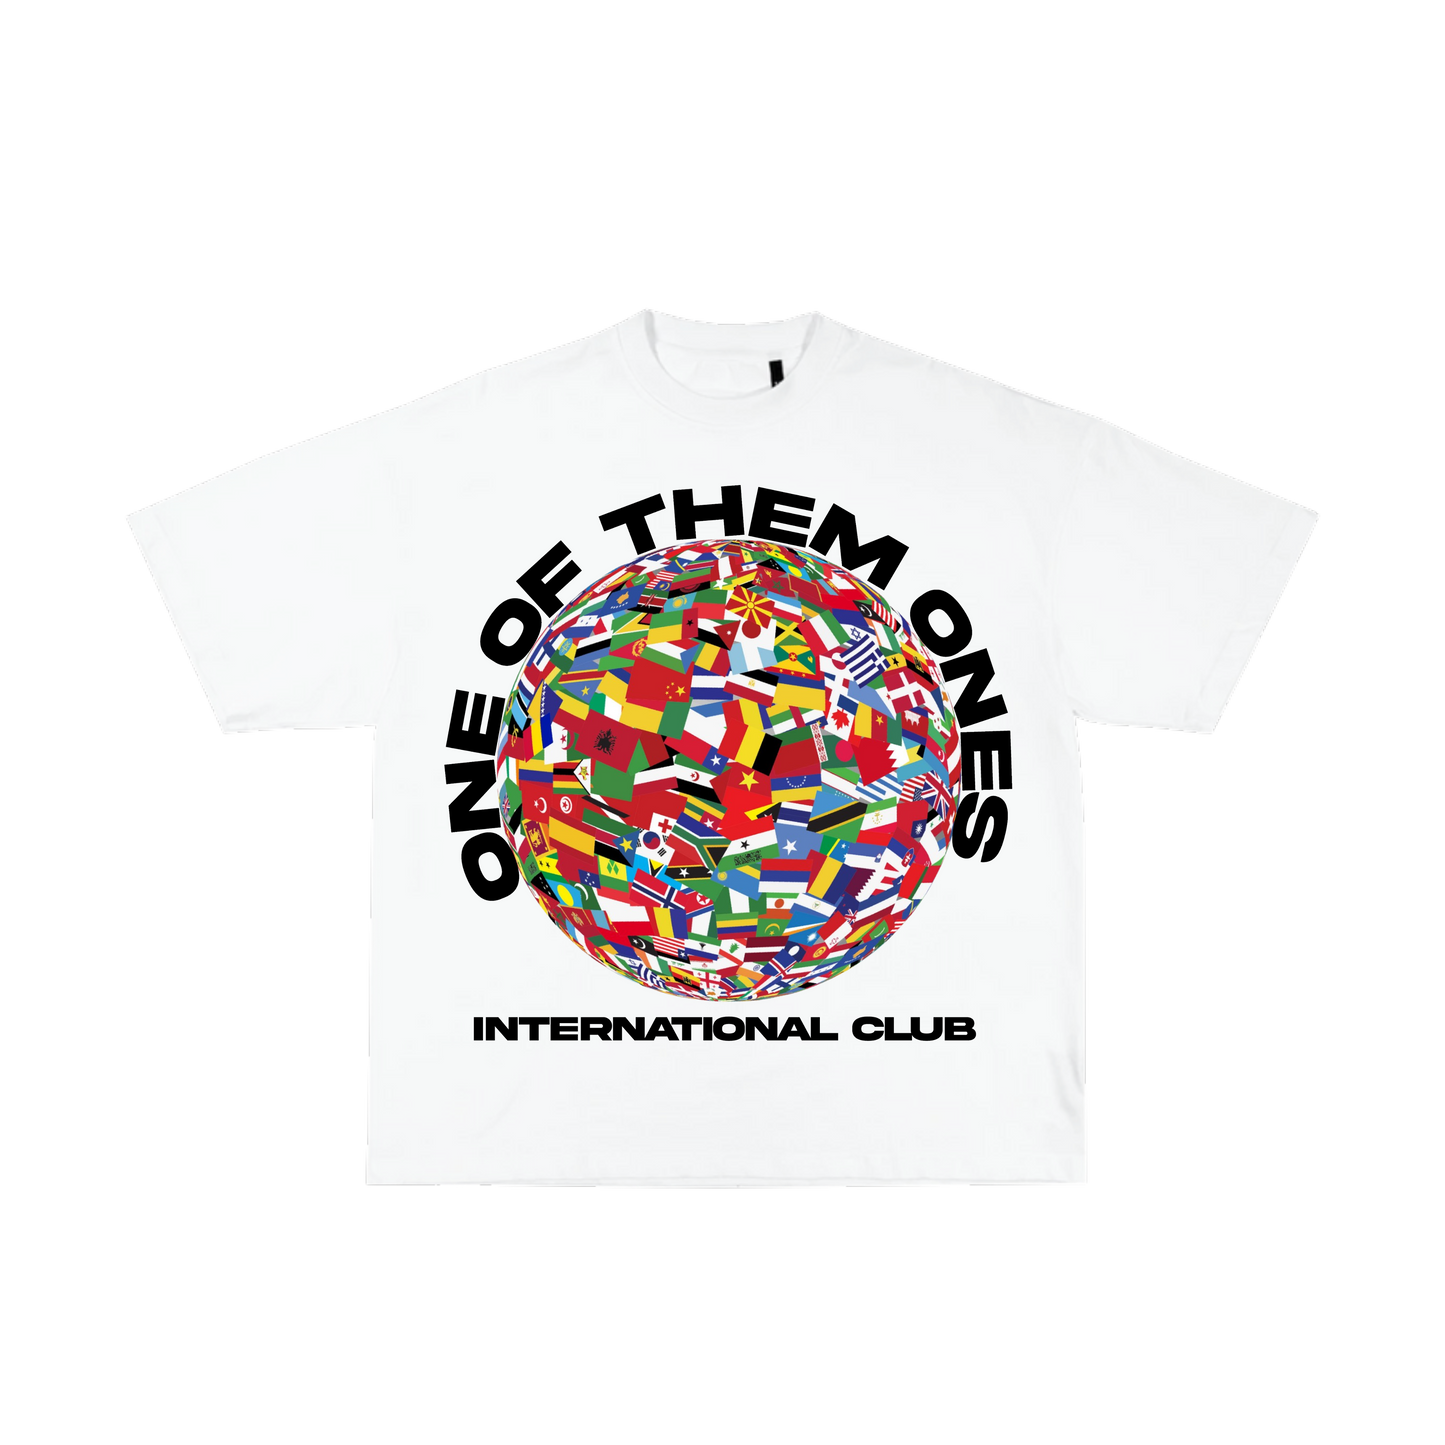 Organik Lyfestyle - 1OFTHEM1's International Club - White T-Shirt